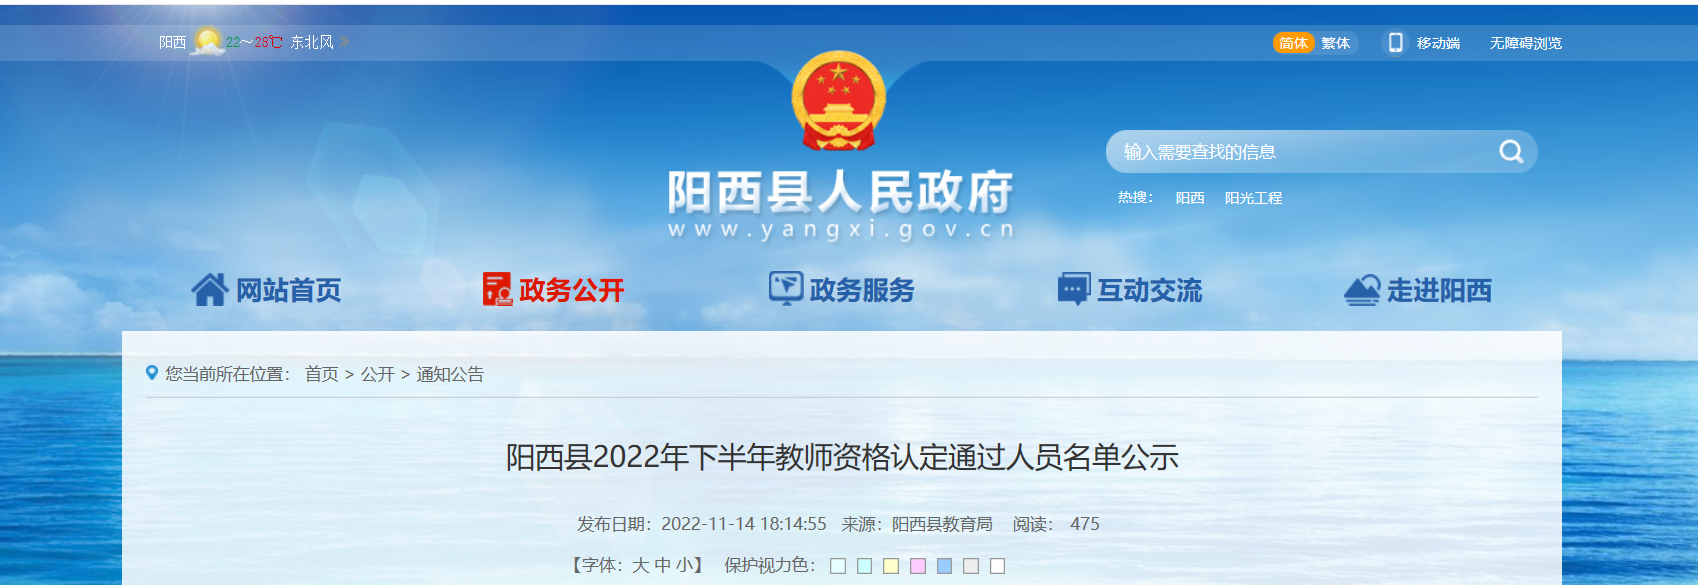 2022年下半年广东阳江阳西县教师资格认定通过人员名单公示